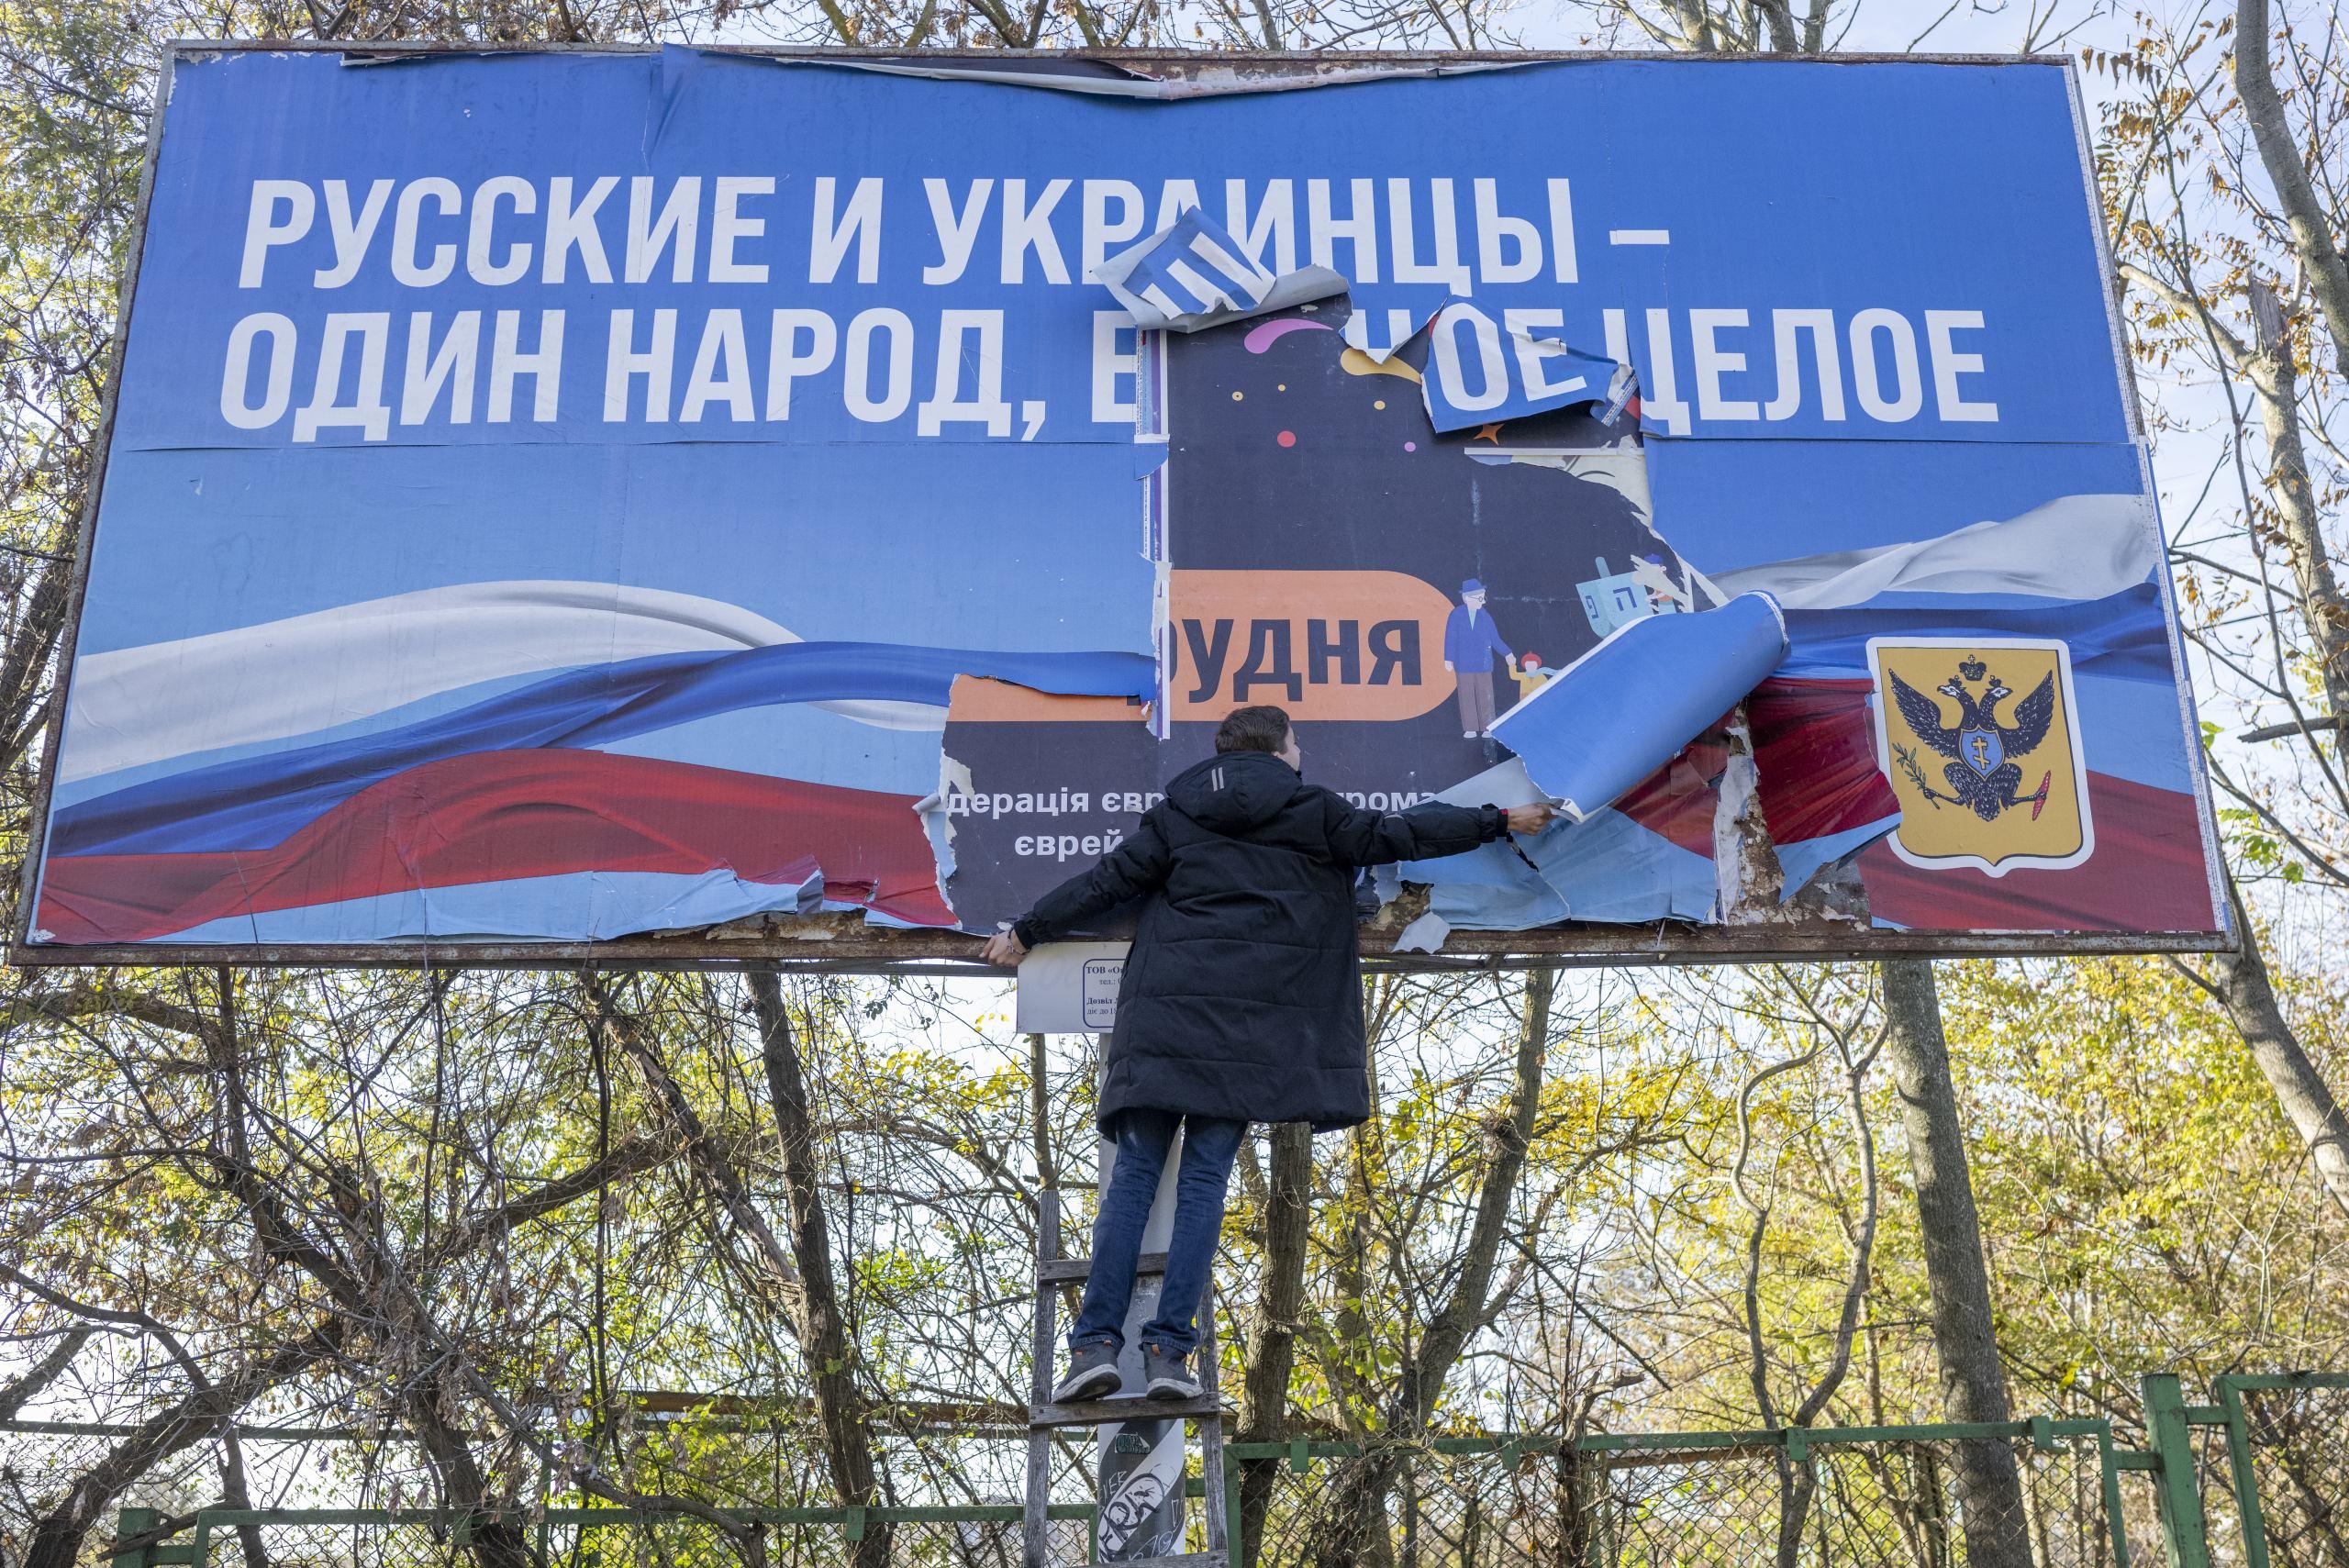 Człowiek zrywa wielki billboard z rosyjskim napisem: Rosjanie i Ukraińcy - jeden naród"